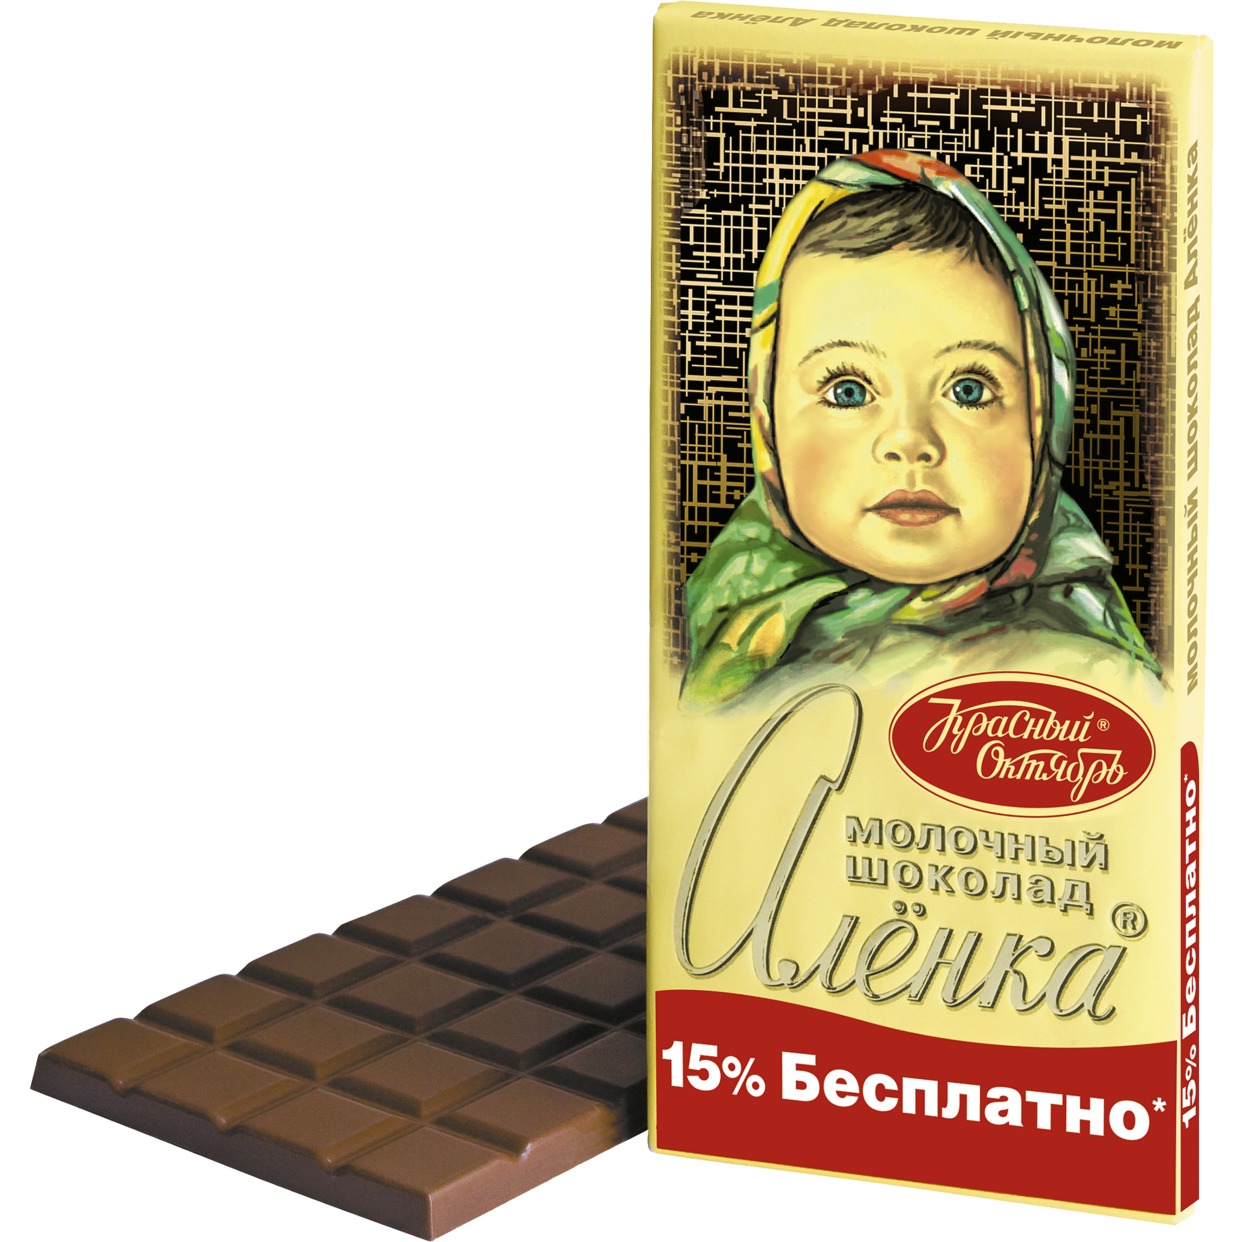 Шоколад Аленка, молочный, Красный Октябрь, 200 г по акции в Пятерочке